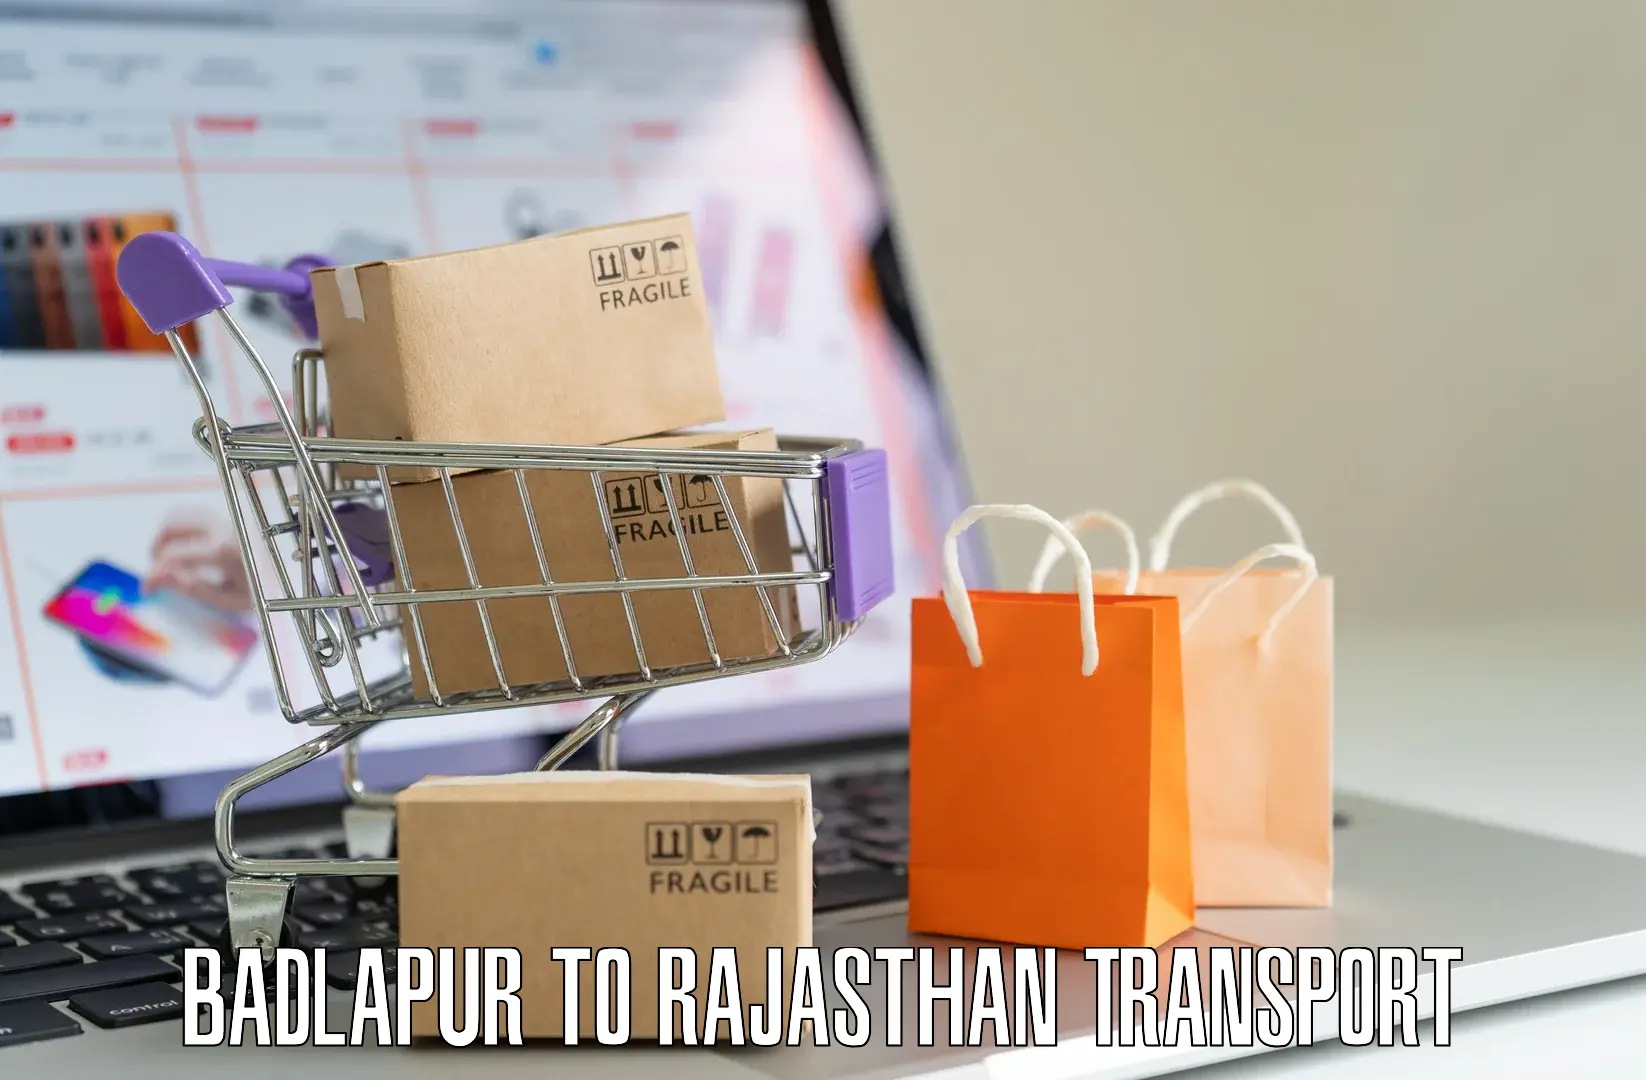 Daily transport service Badlapur to Ras Pali